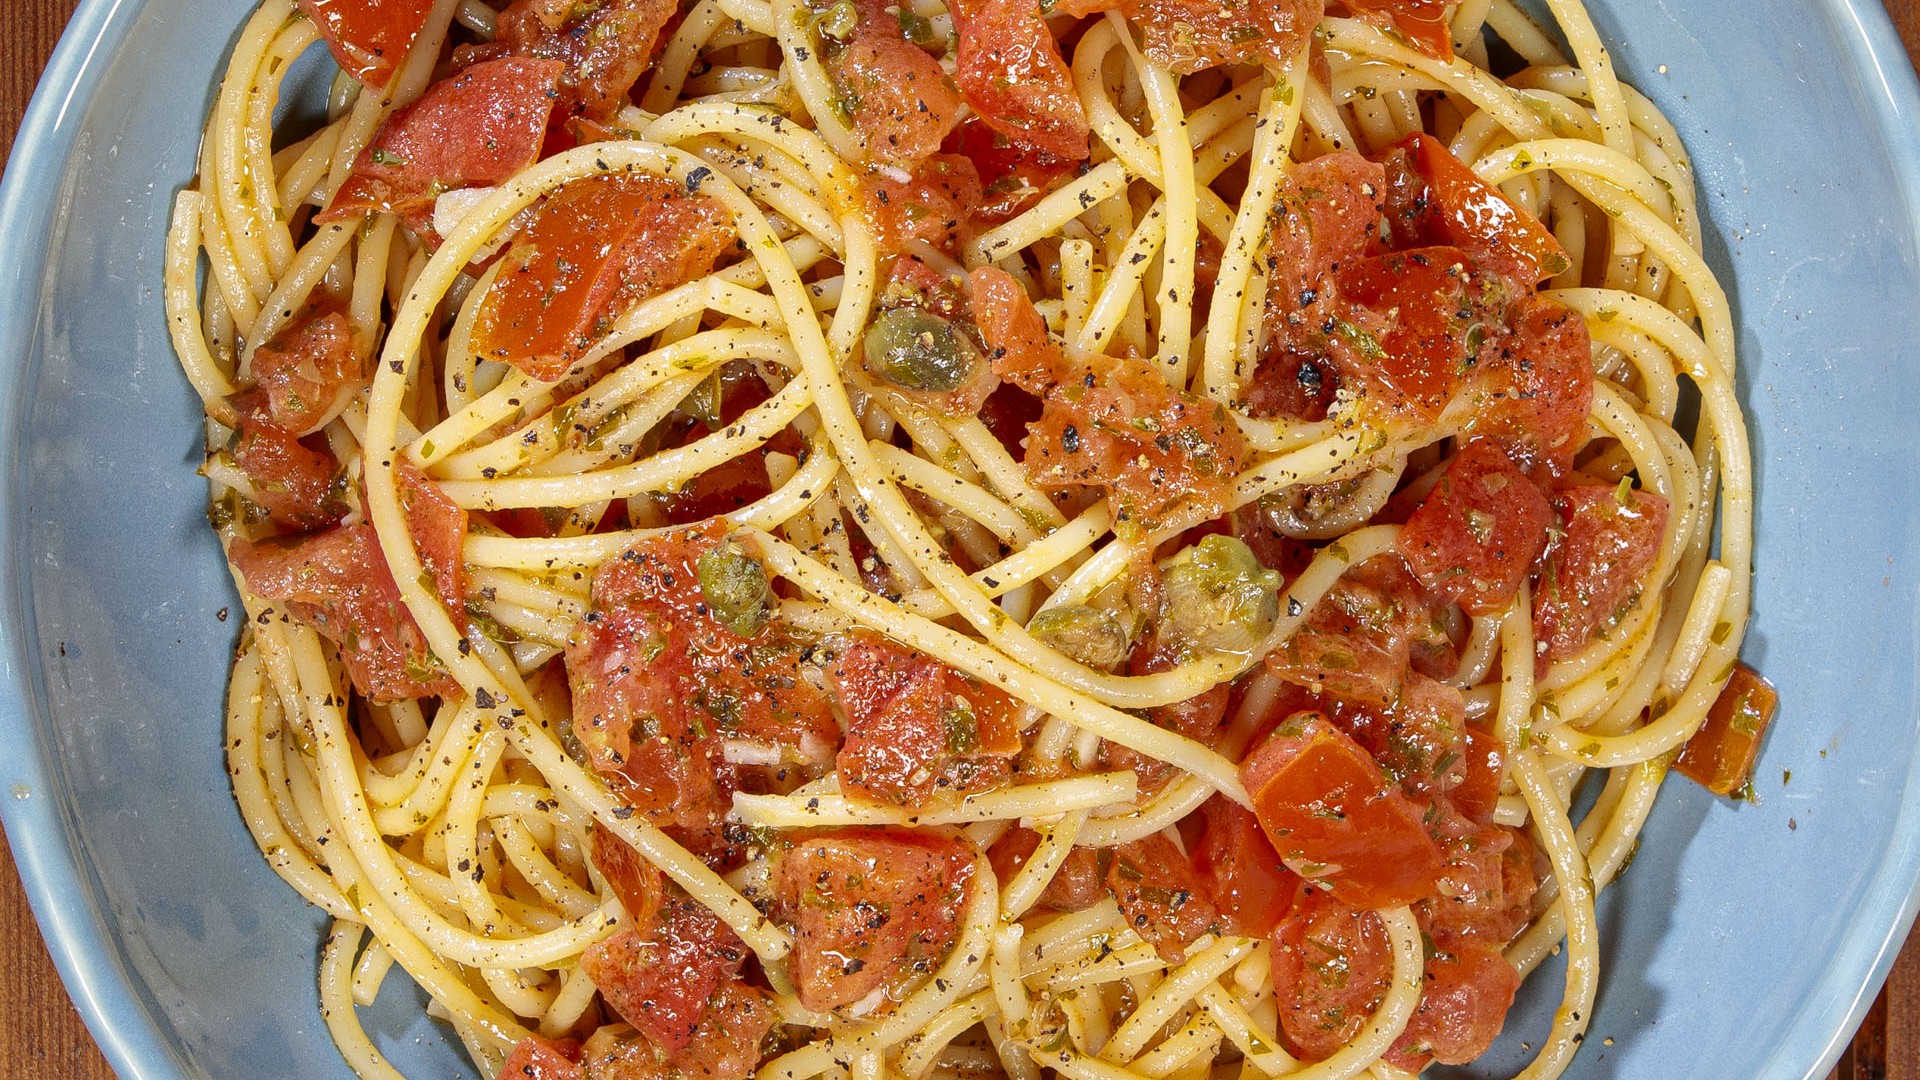 Spaghetti alla rivierasca